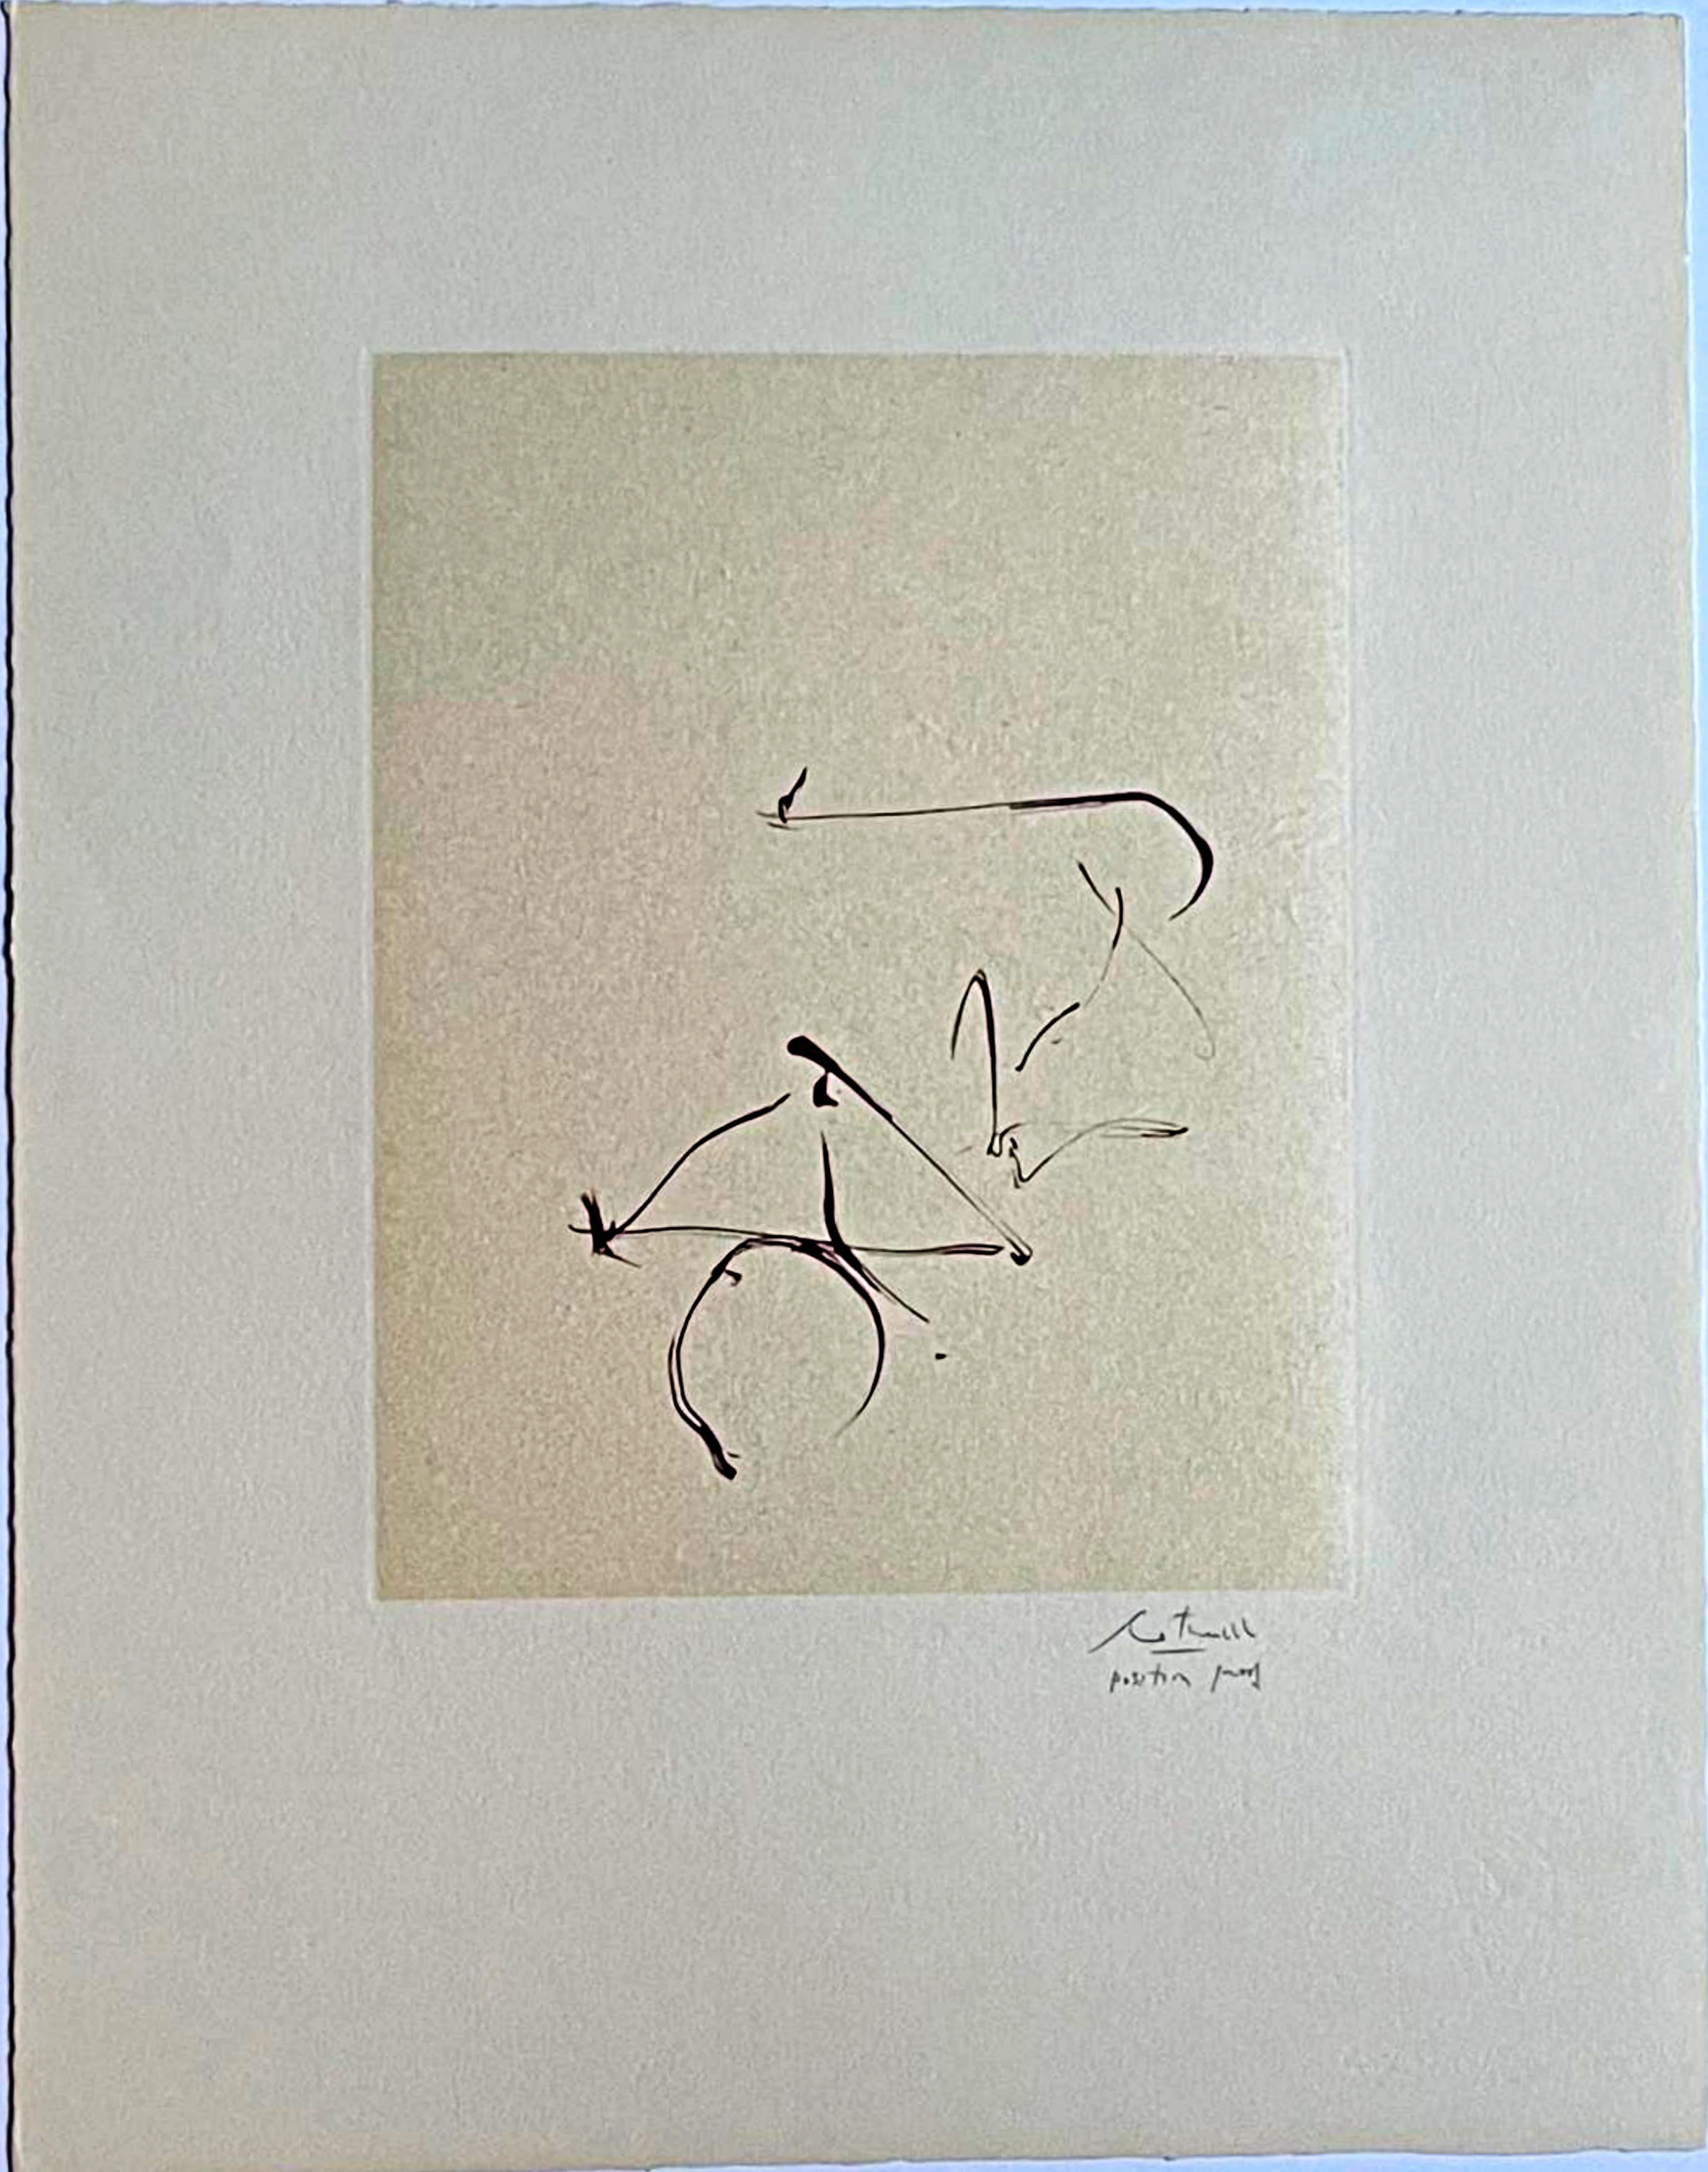 Retour de la suite Octavio Paz (épreuve de position signée unique) Engberg/Banach - Print de Robert Motherwell